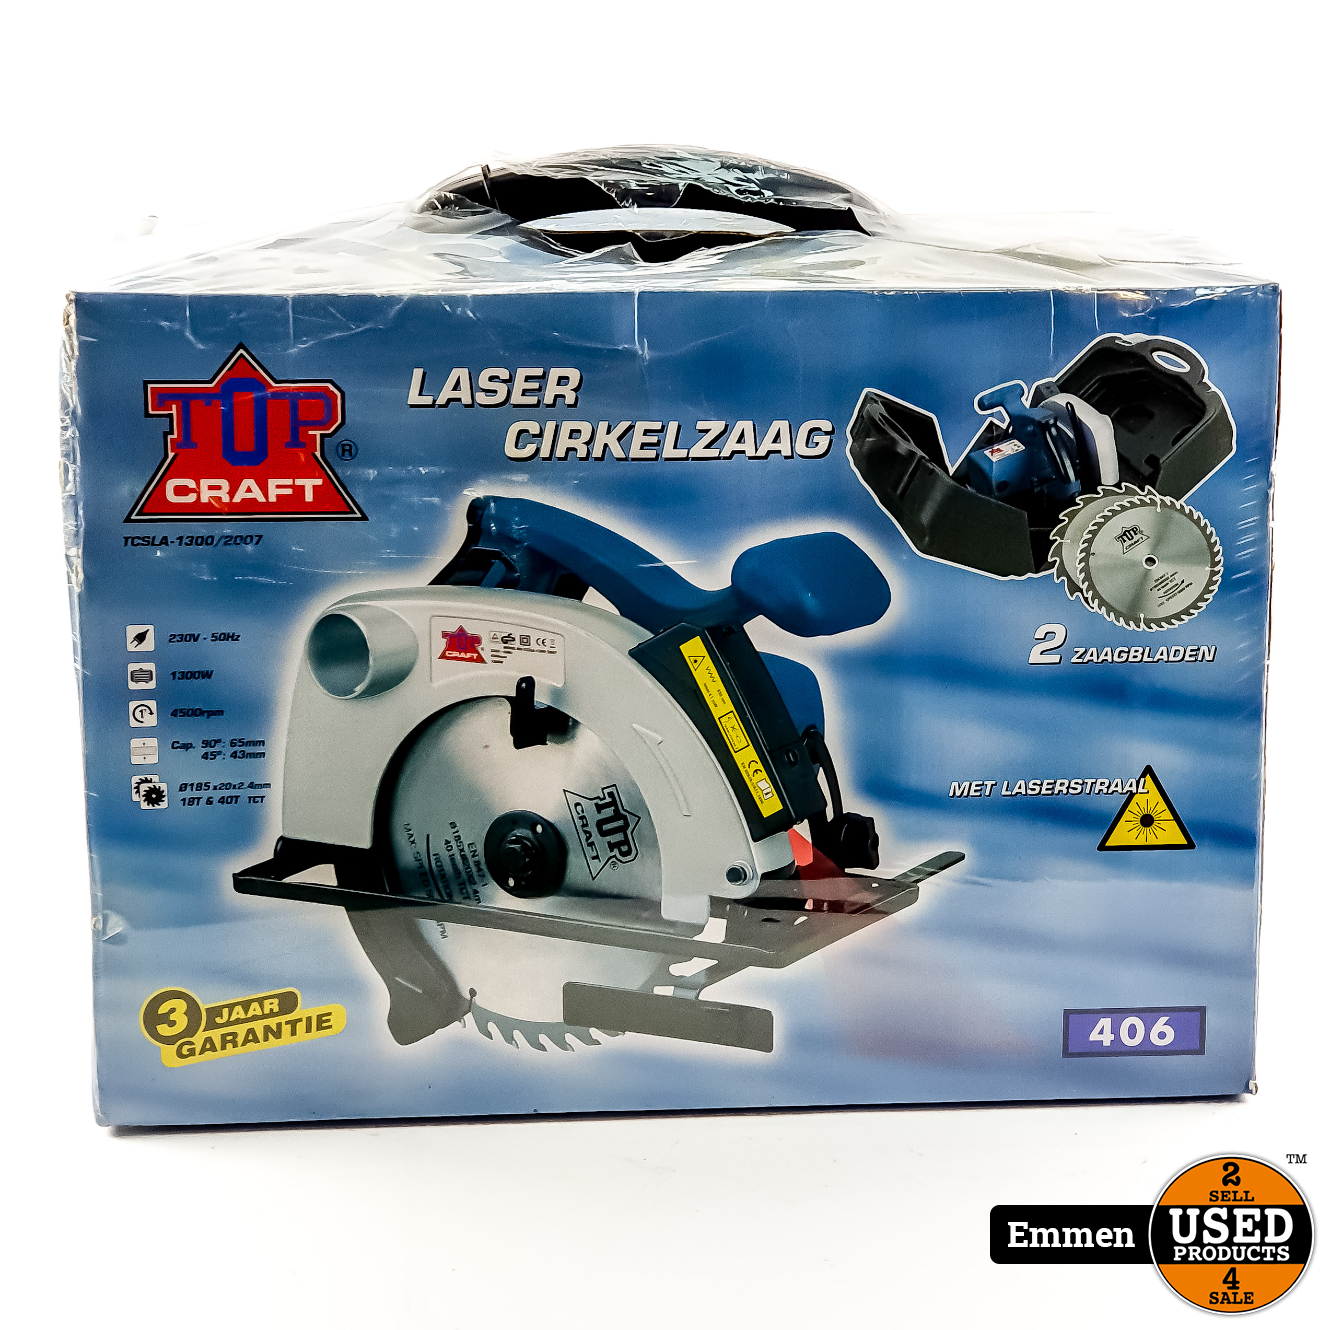 garen Behoren Thermisch Top Craft TCSLA-1300/2007 Laser Cirkelzaag | Nieuw In Seal - Used Products  Emmen